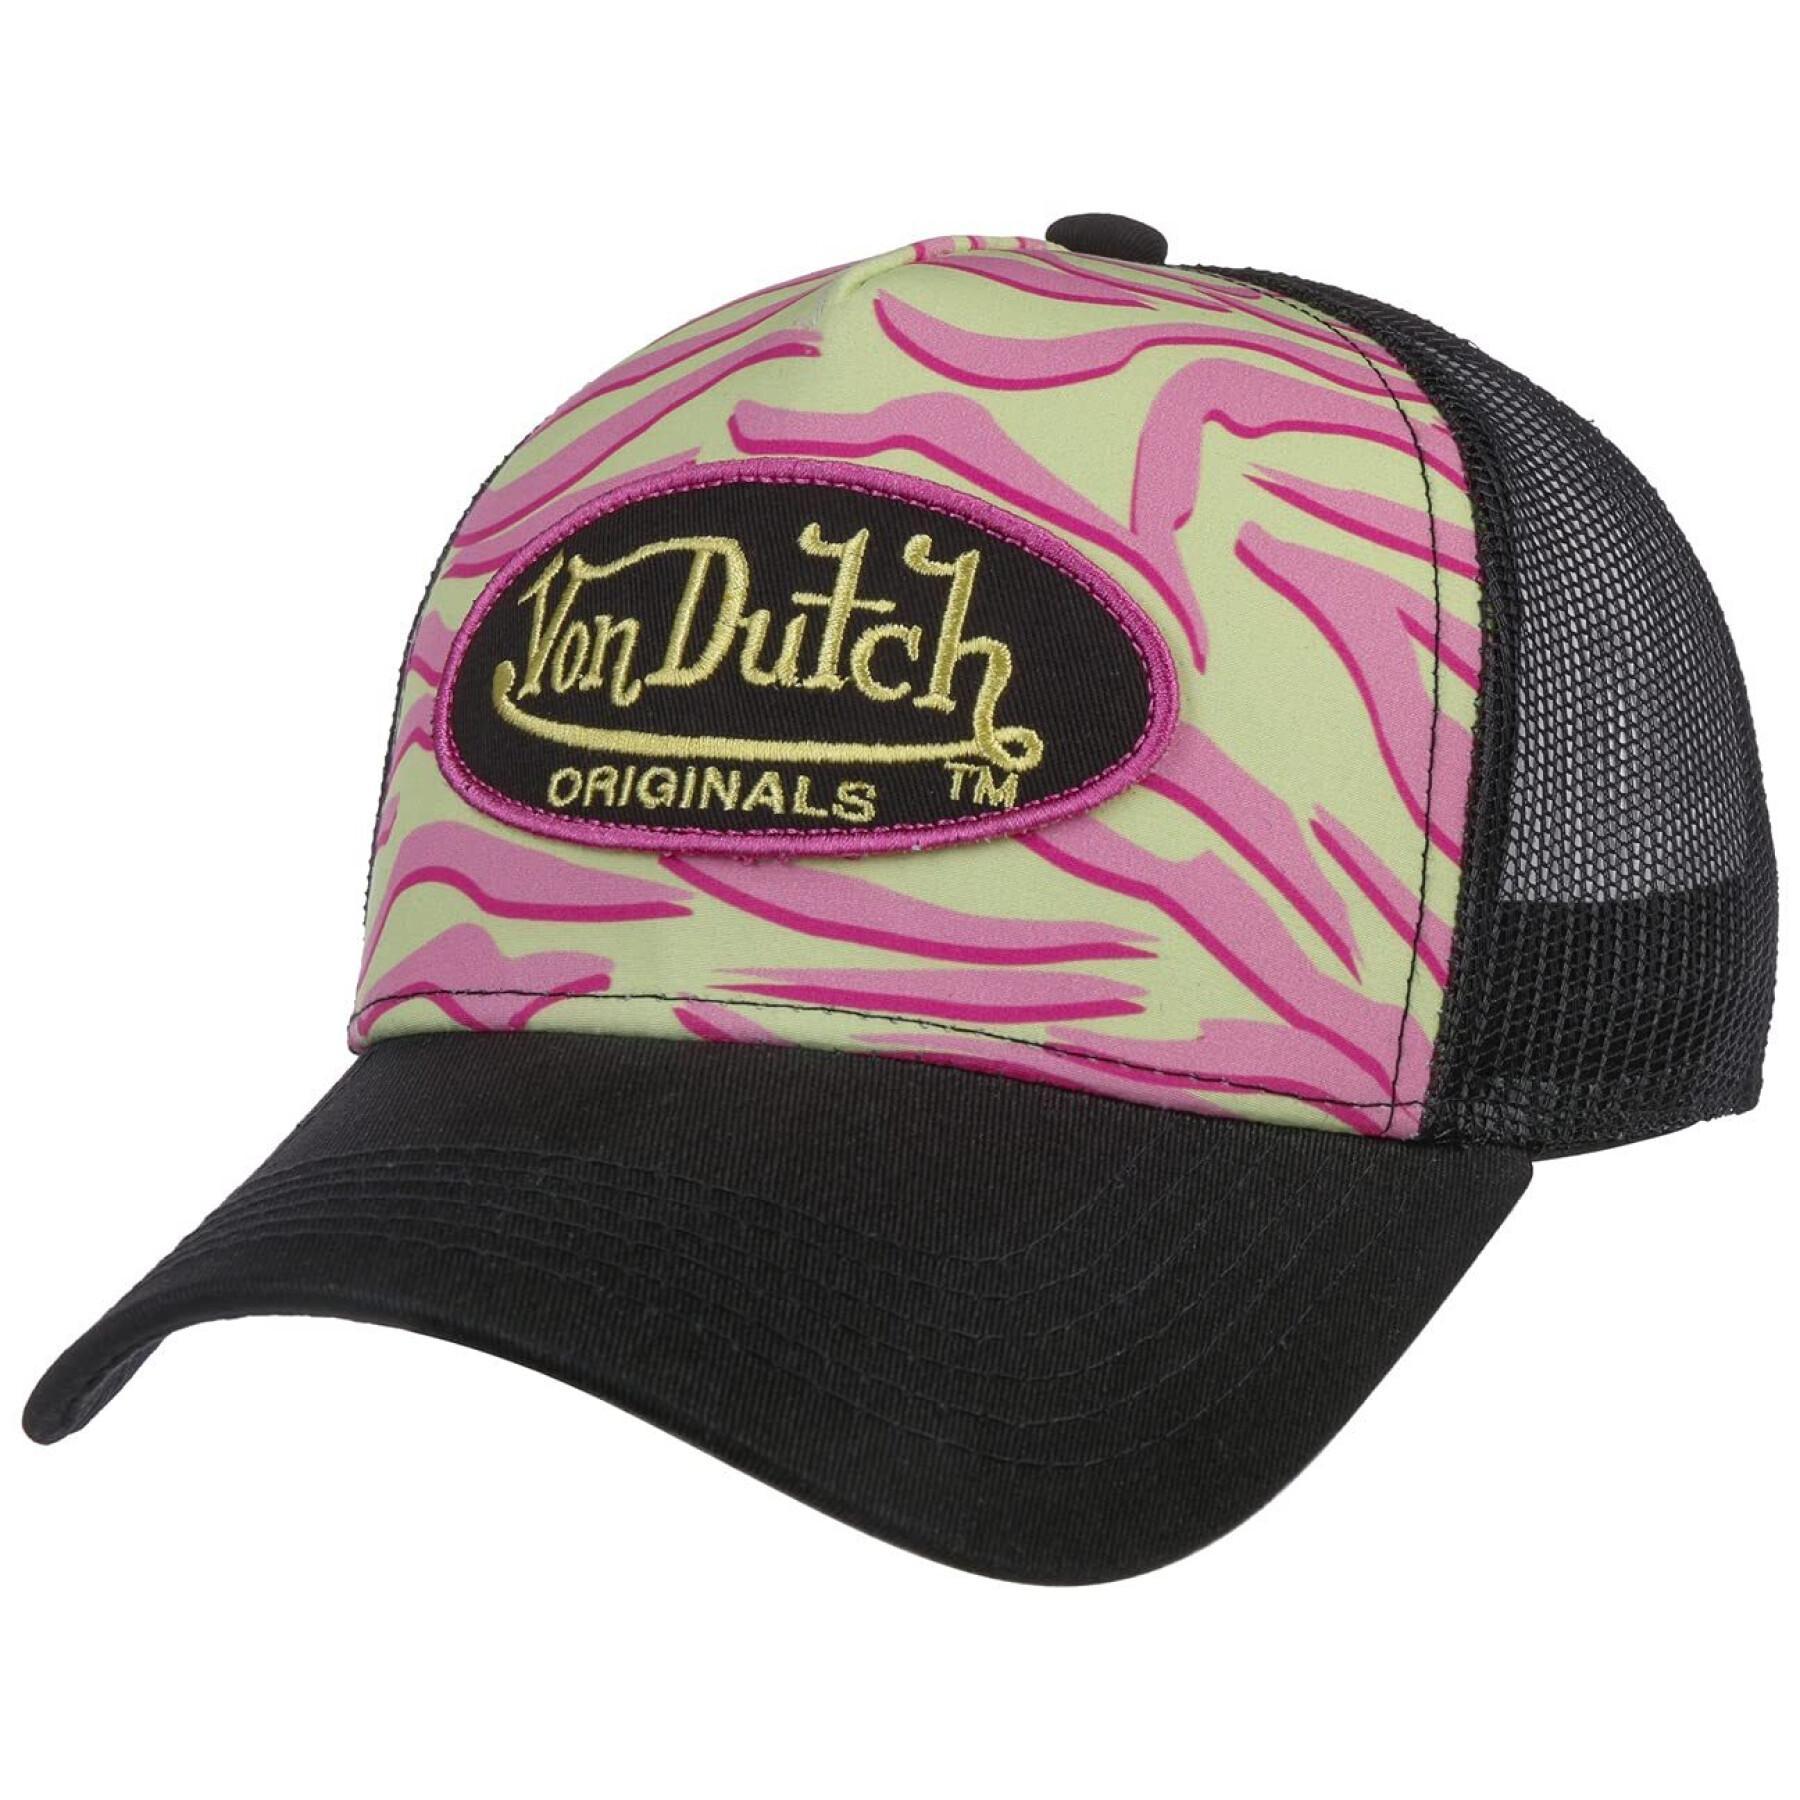 Cap Von Dutch logo